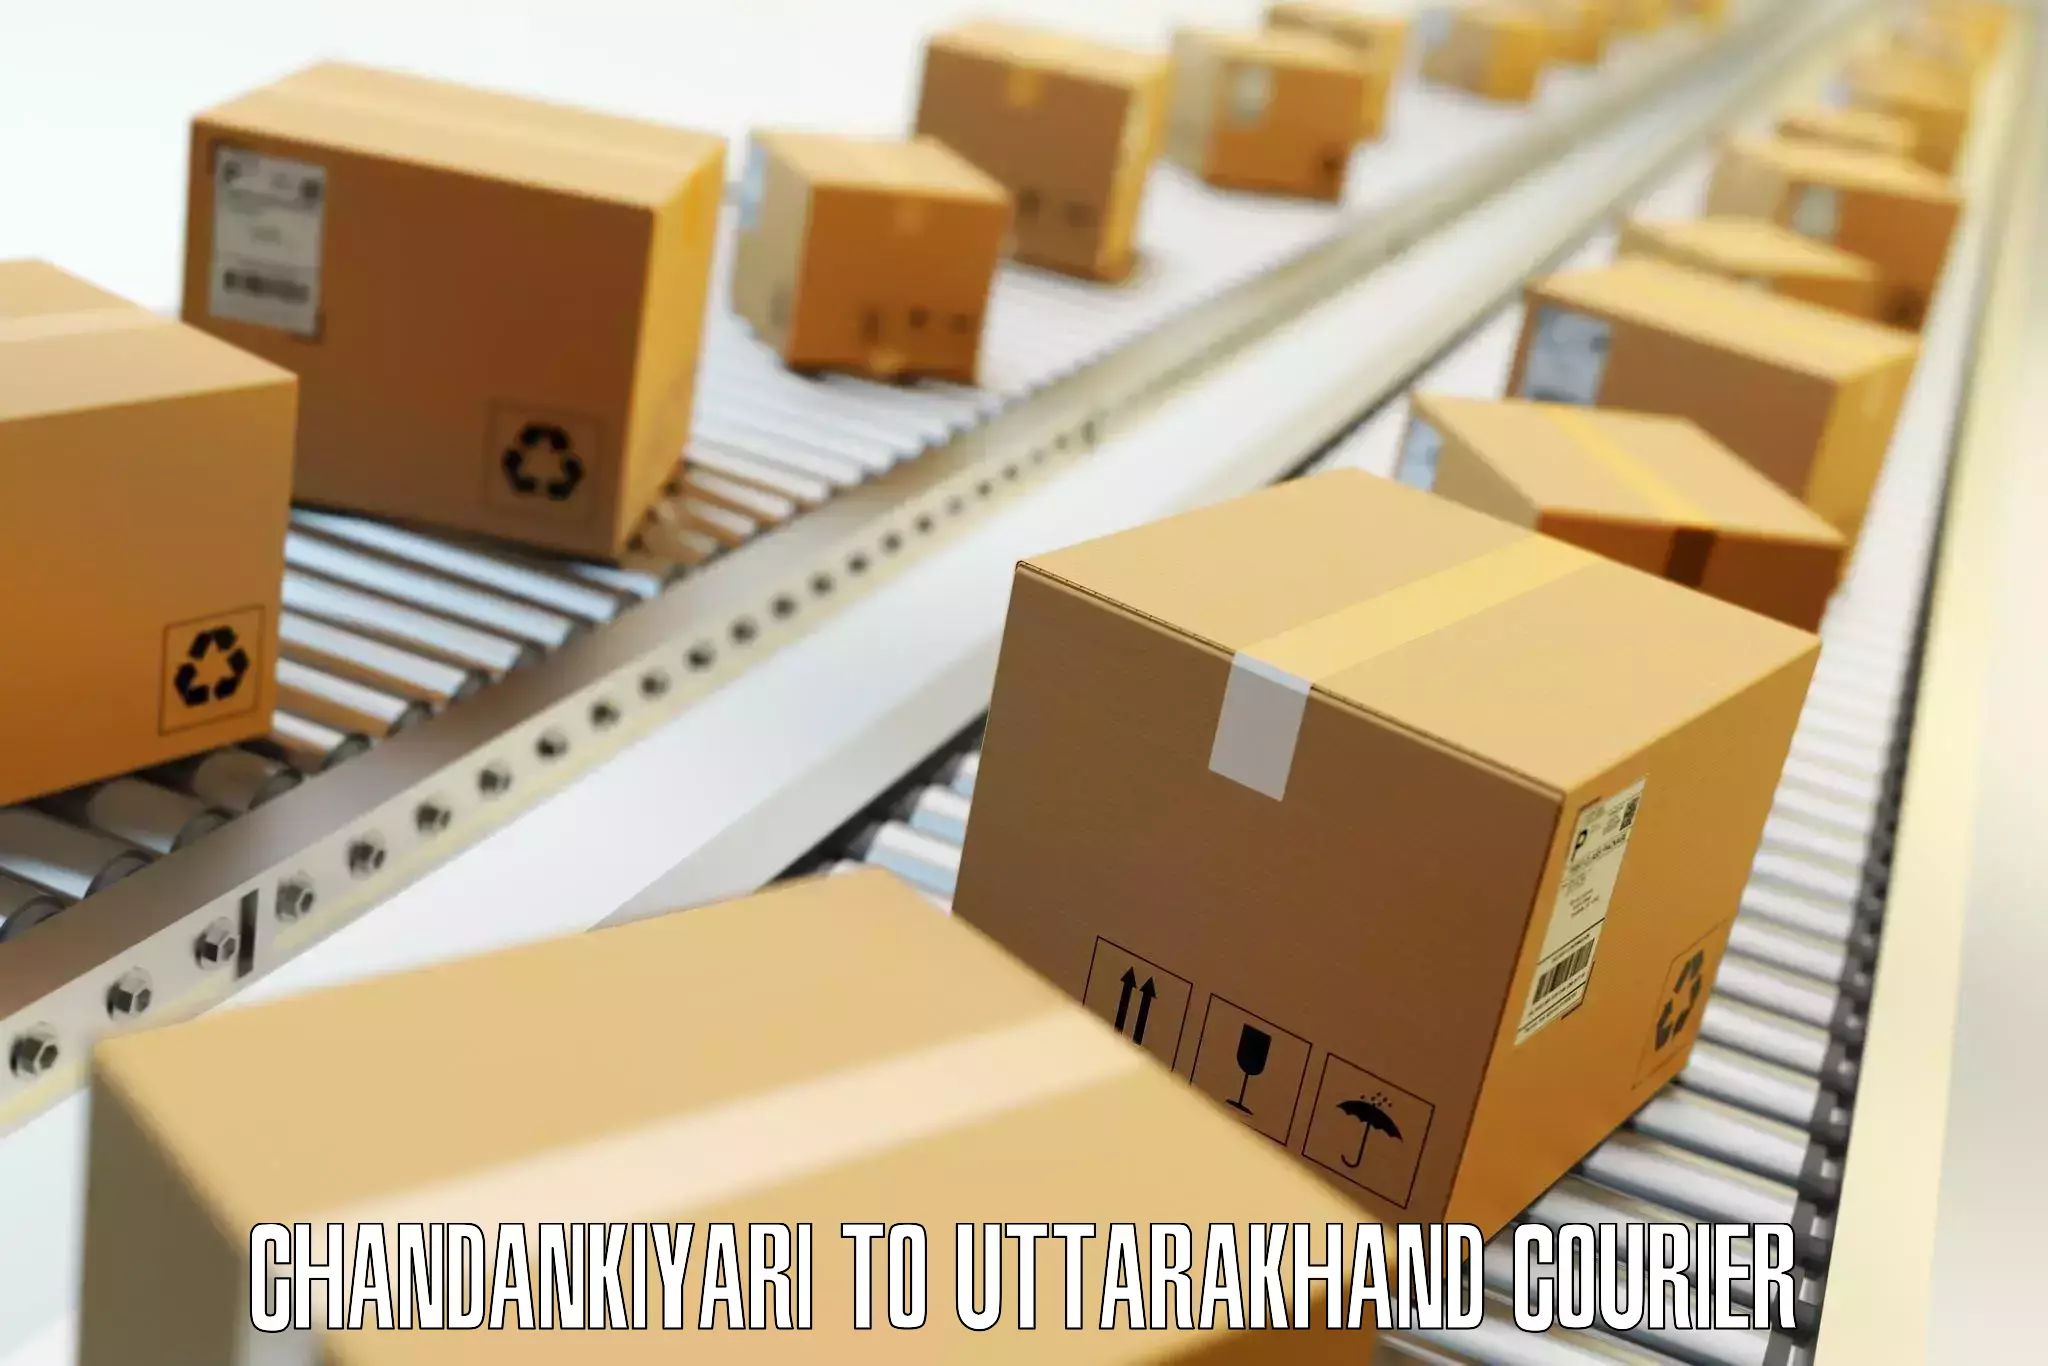 Group luggage shipping Chandankiyari to Uttarakhand